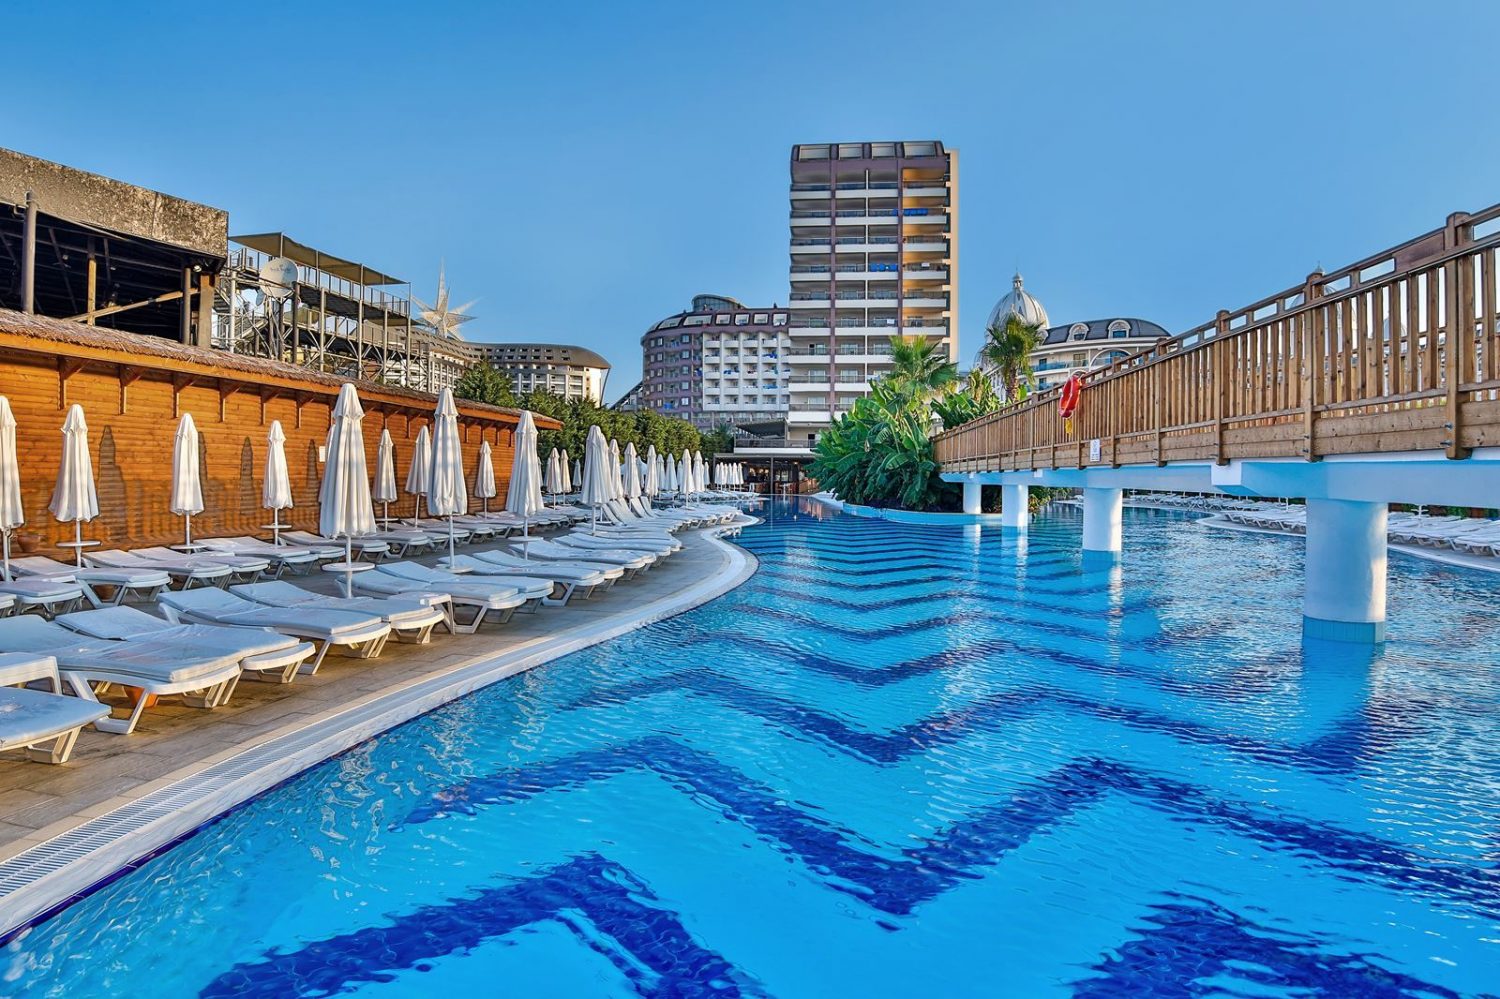 Hotel Saturn Palace in Lara het zwembad met loopbrug over het water heen naar het hotel